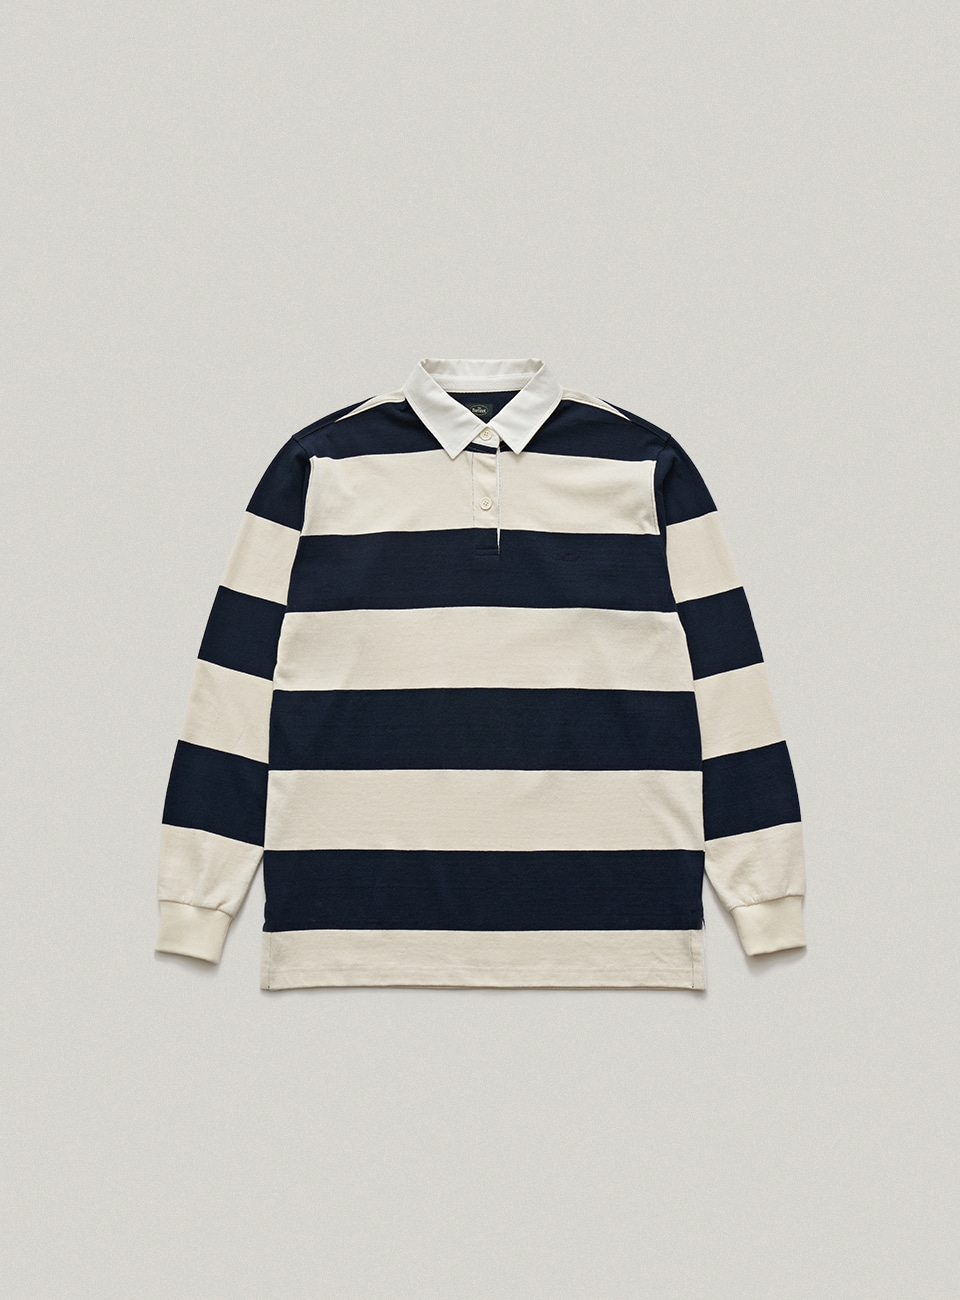 Navy Classic Striped Rugby Shirt[10월 말 순차 배송]